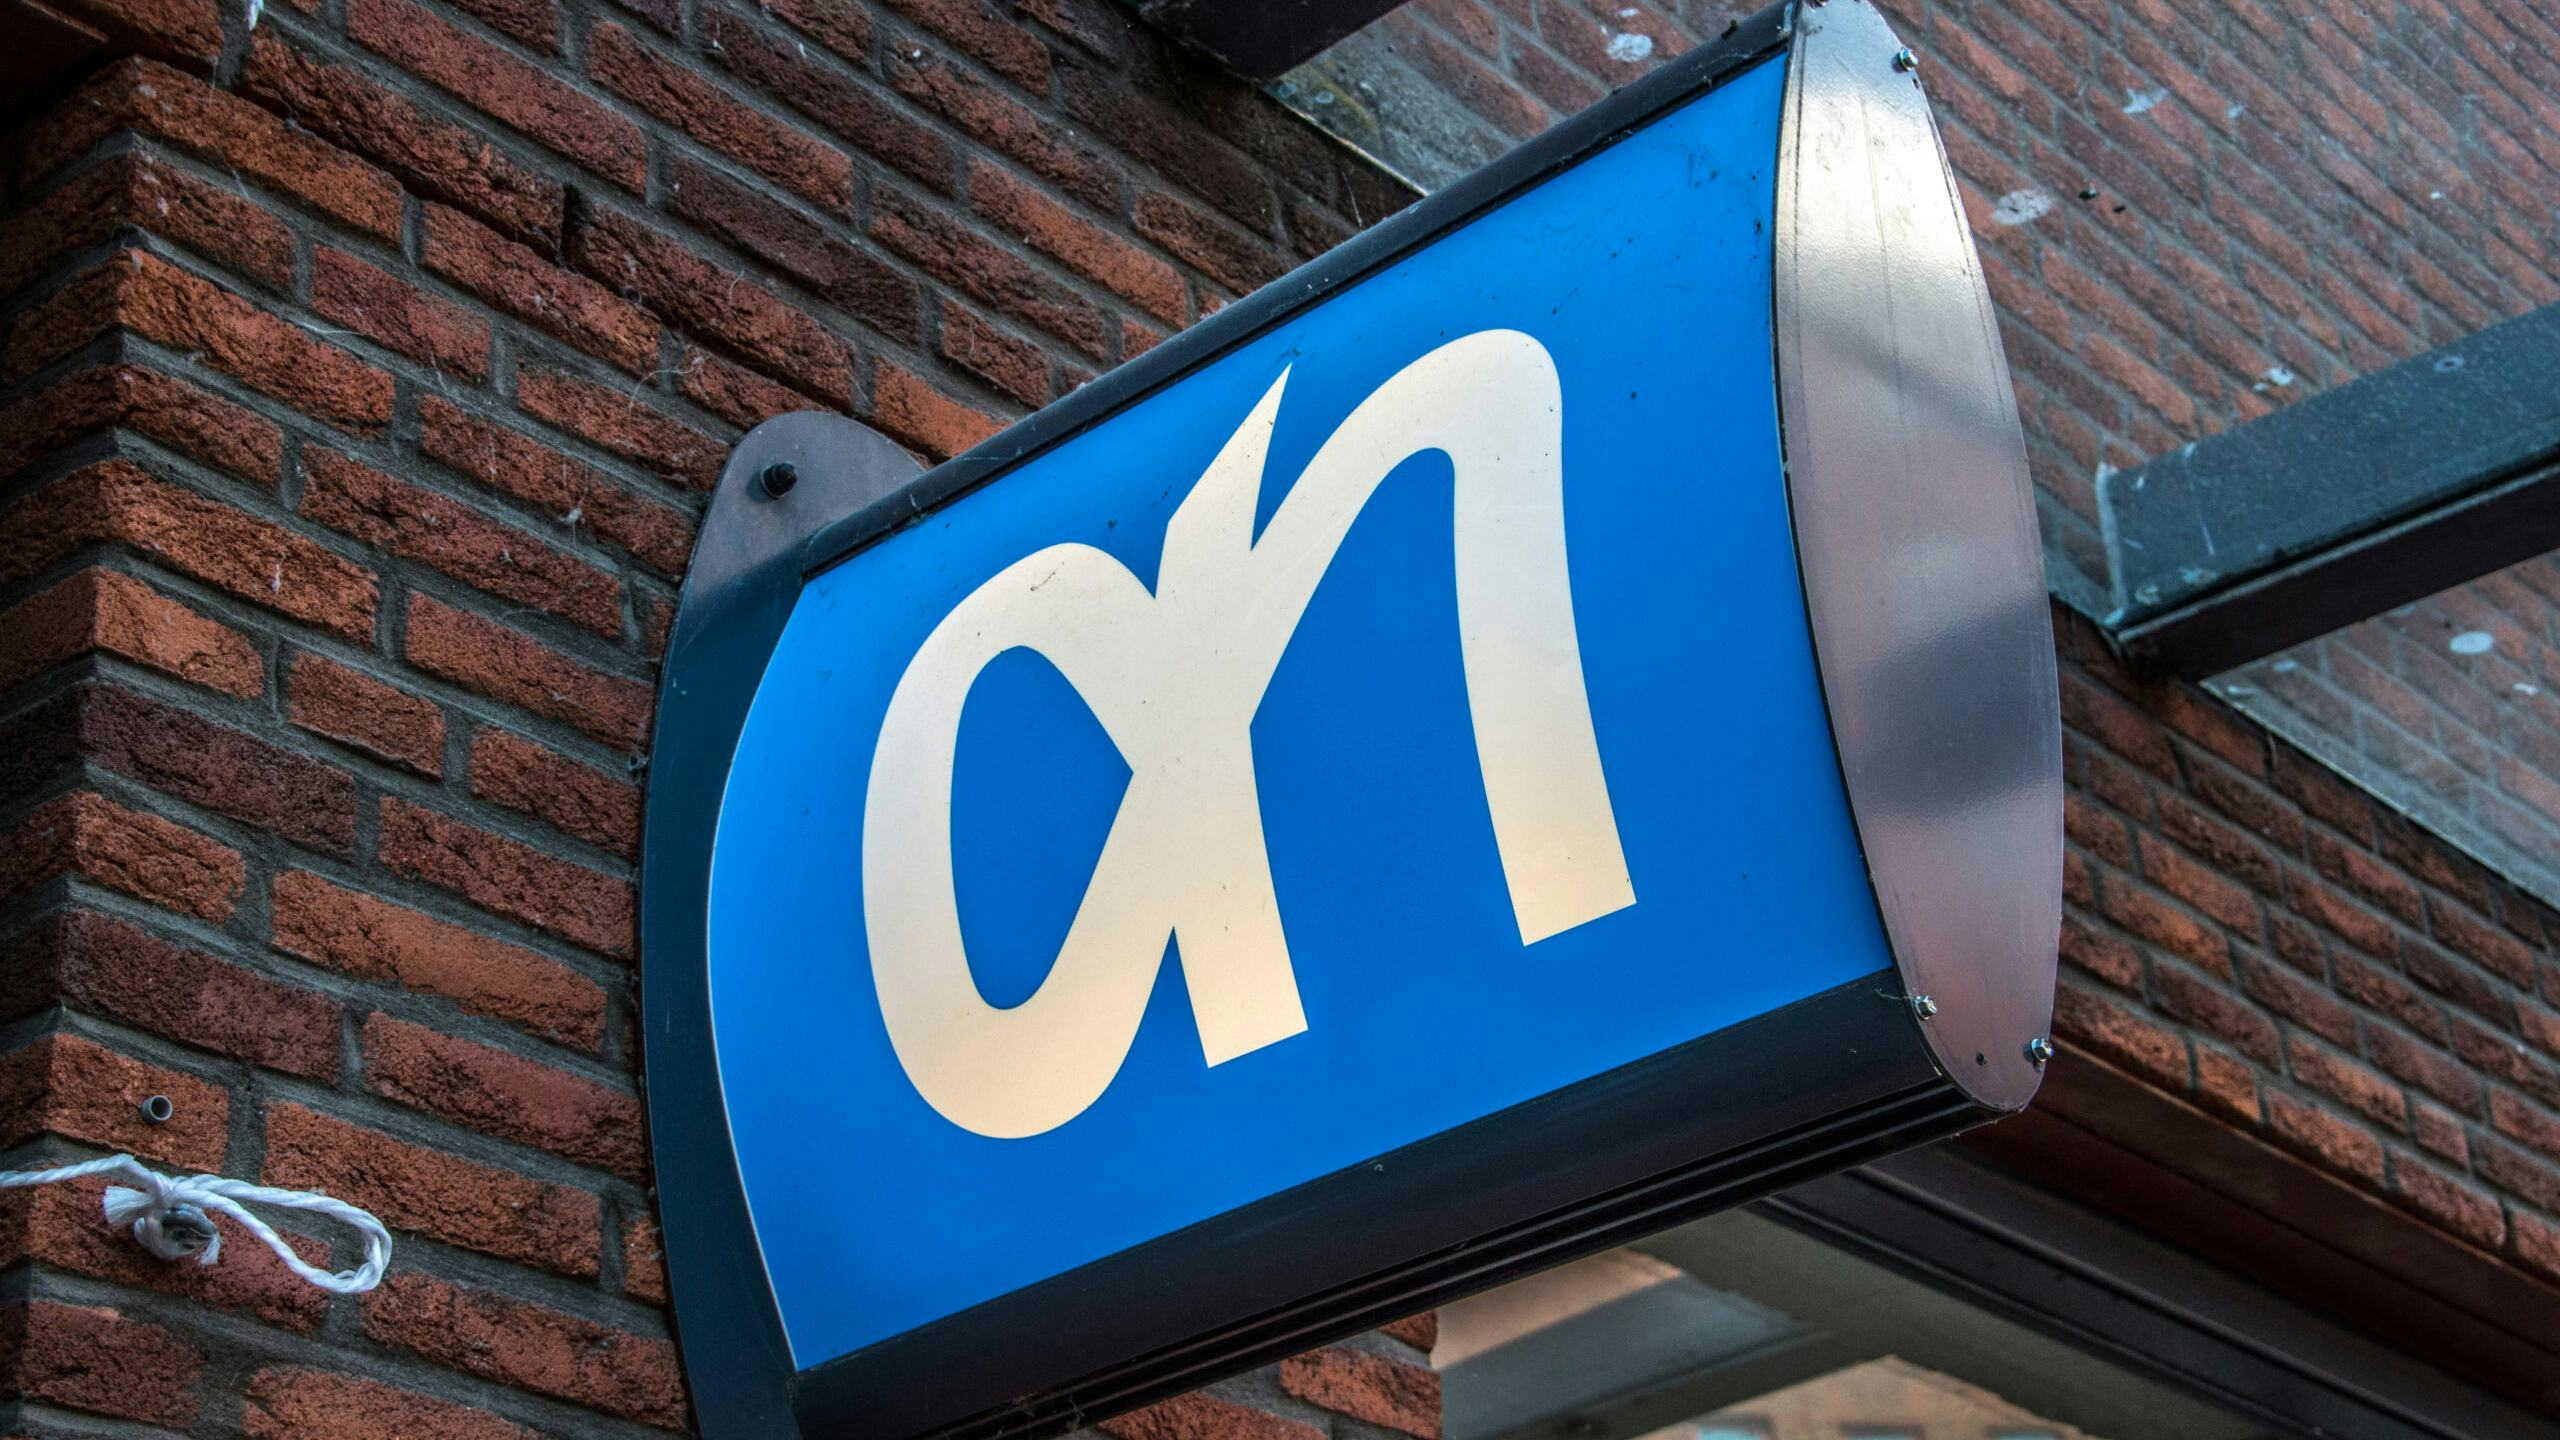 Logo van Albert Heijn aan de geval van een supermarkt. Foto: Shutterstock